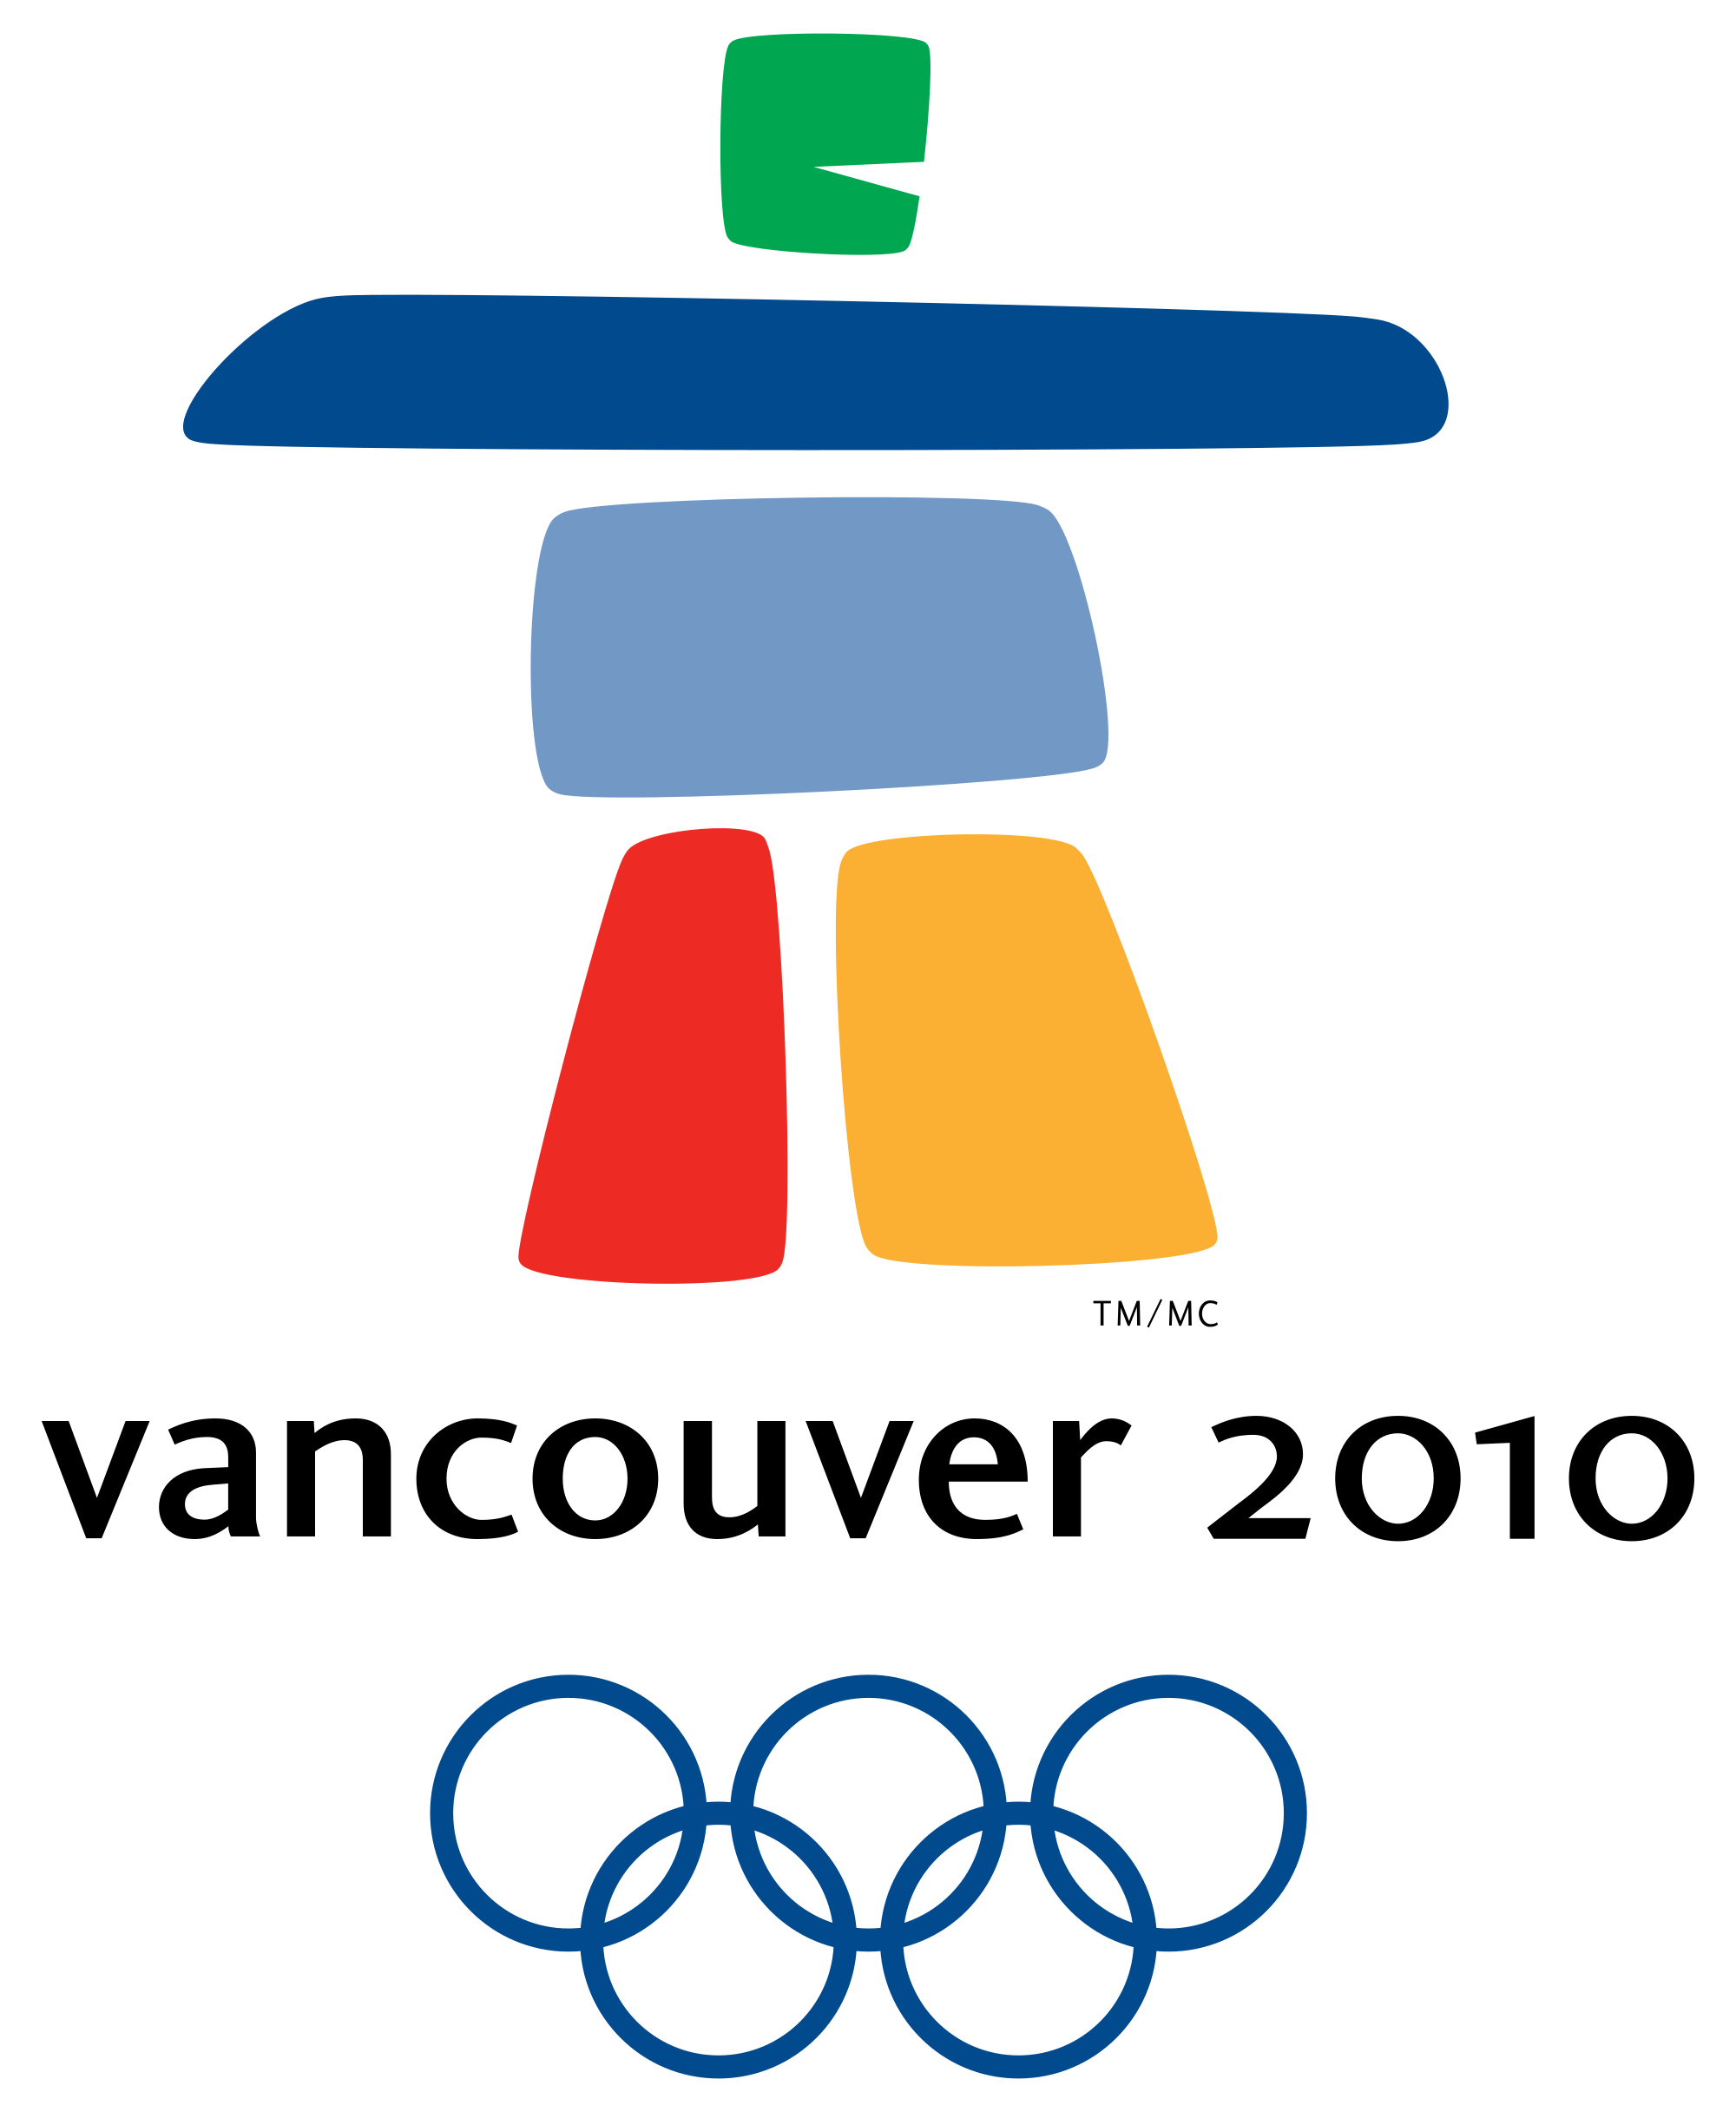 冬奥会徽标志及其寓意图片